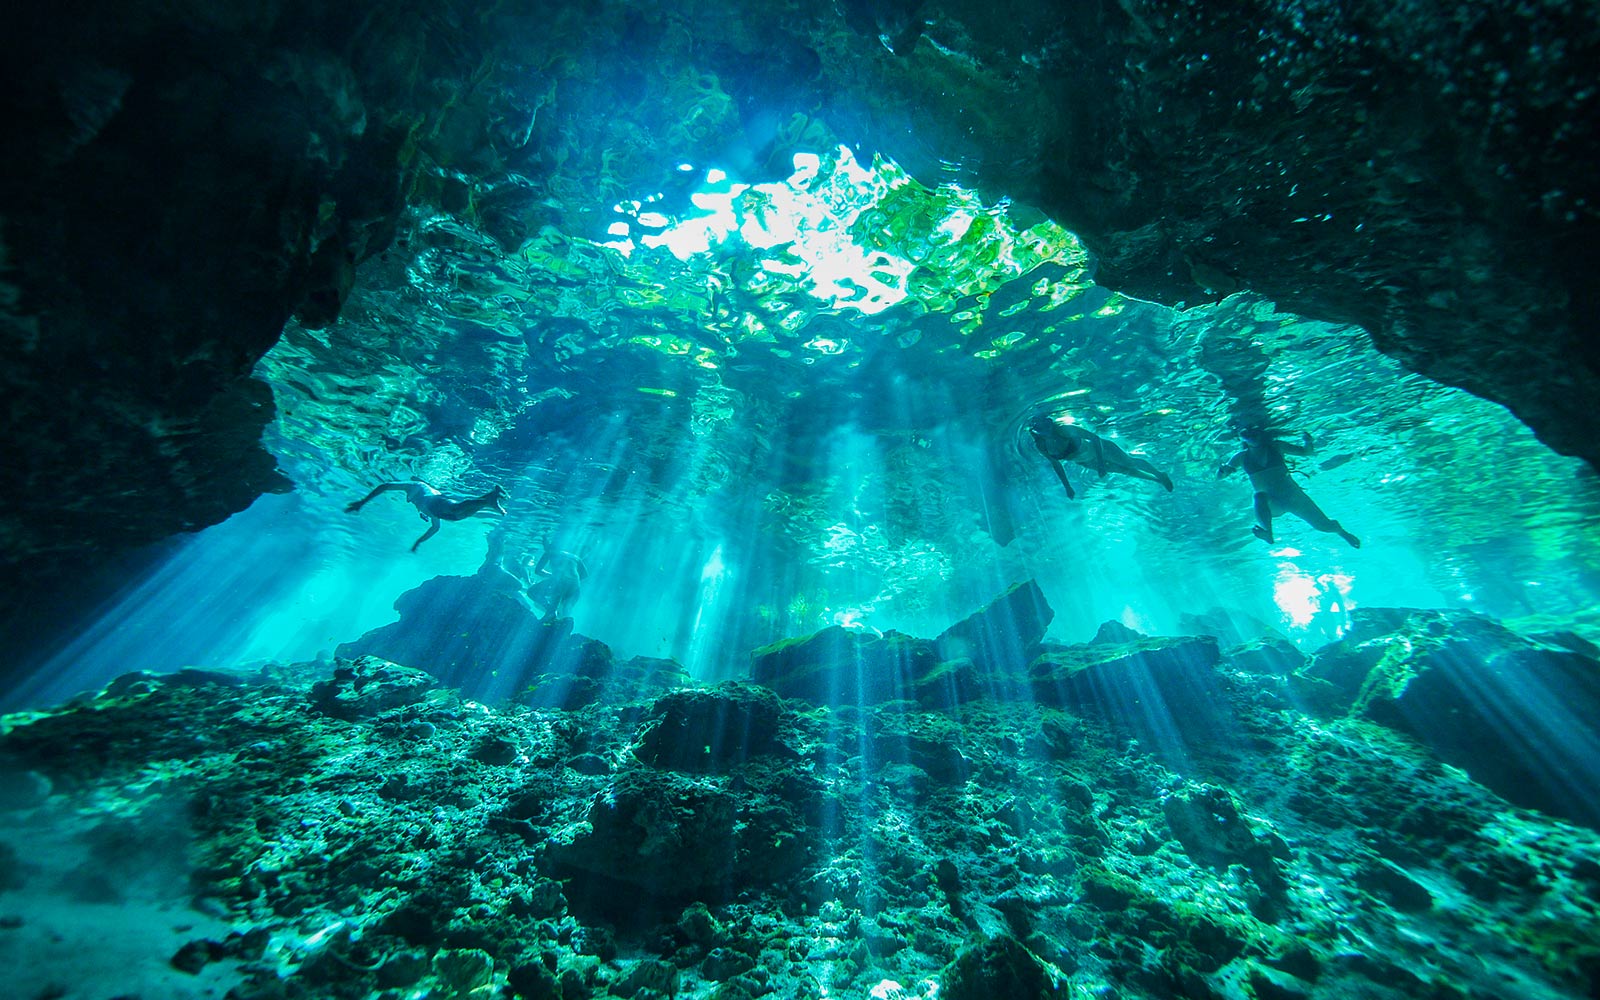 Podvodni prizor, osvetljen z žarki svetlobe, ki padajo na vodo (predvajanje videa).